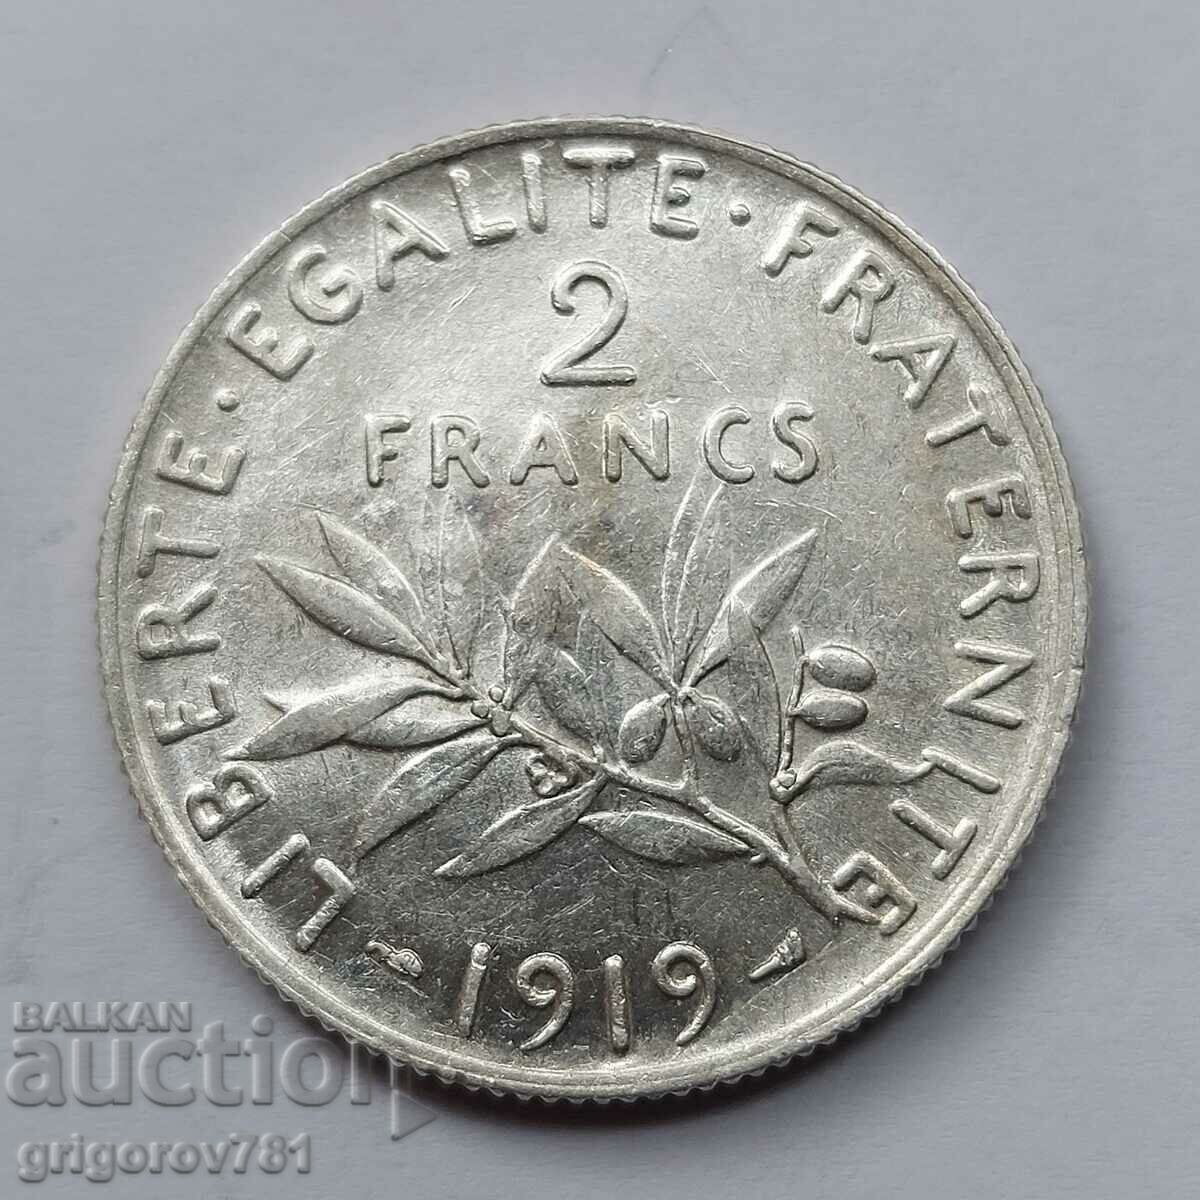 2 Franci Argint Franta 1919 - Moneda de argint #142